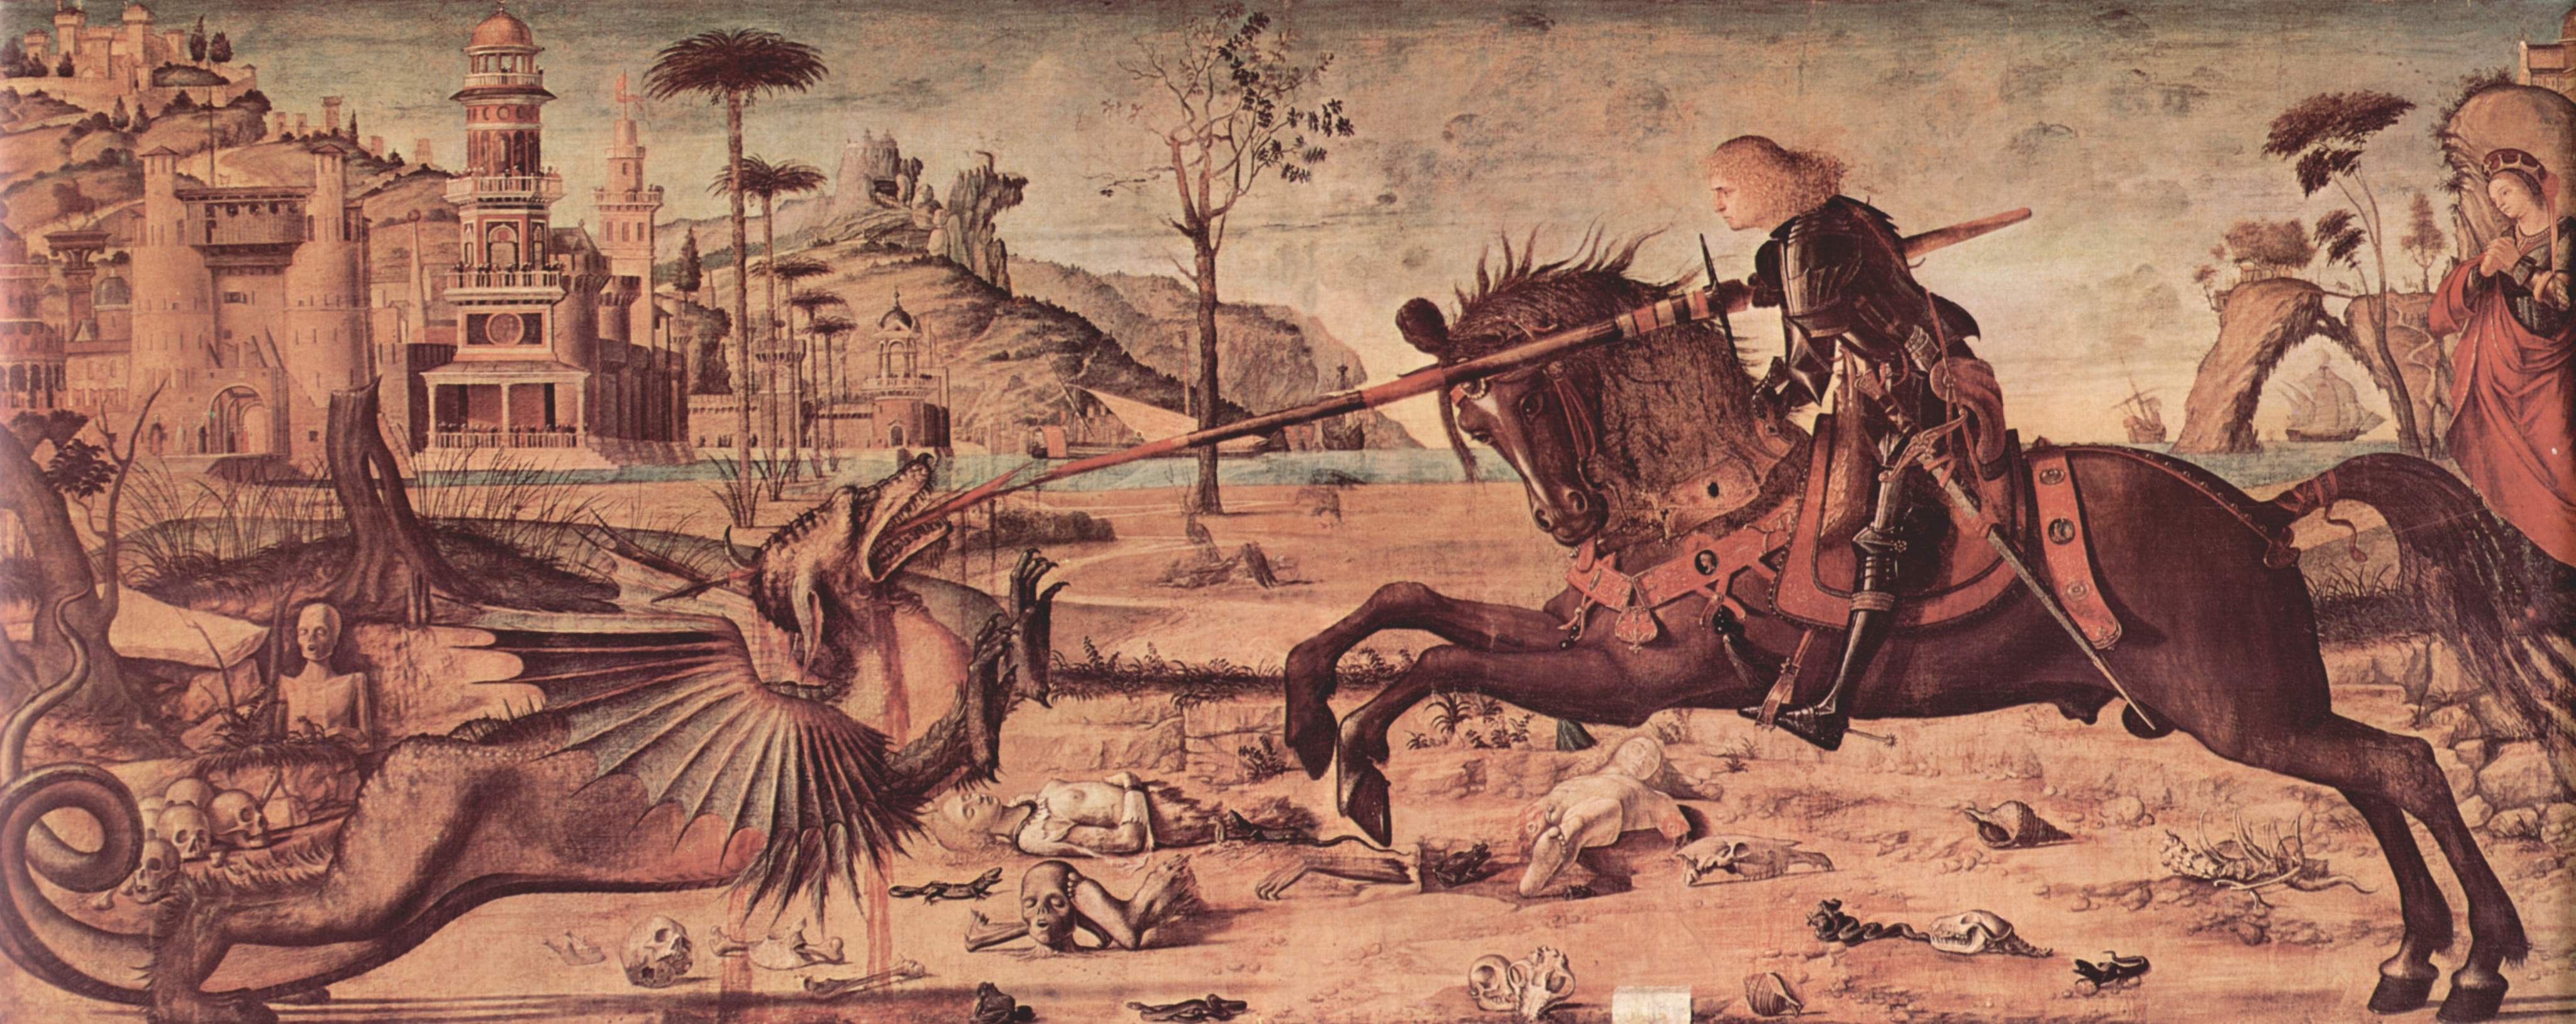 Sfântul Gheorghe și Dragonul by Vittore Carpaccio - 150 - 141 x 360 cm 